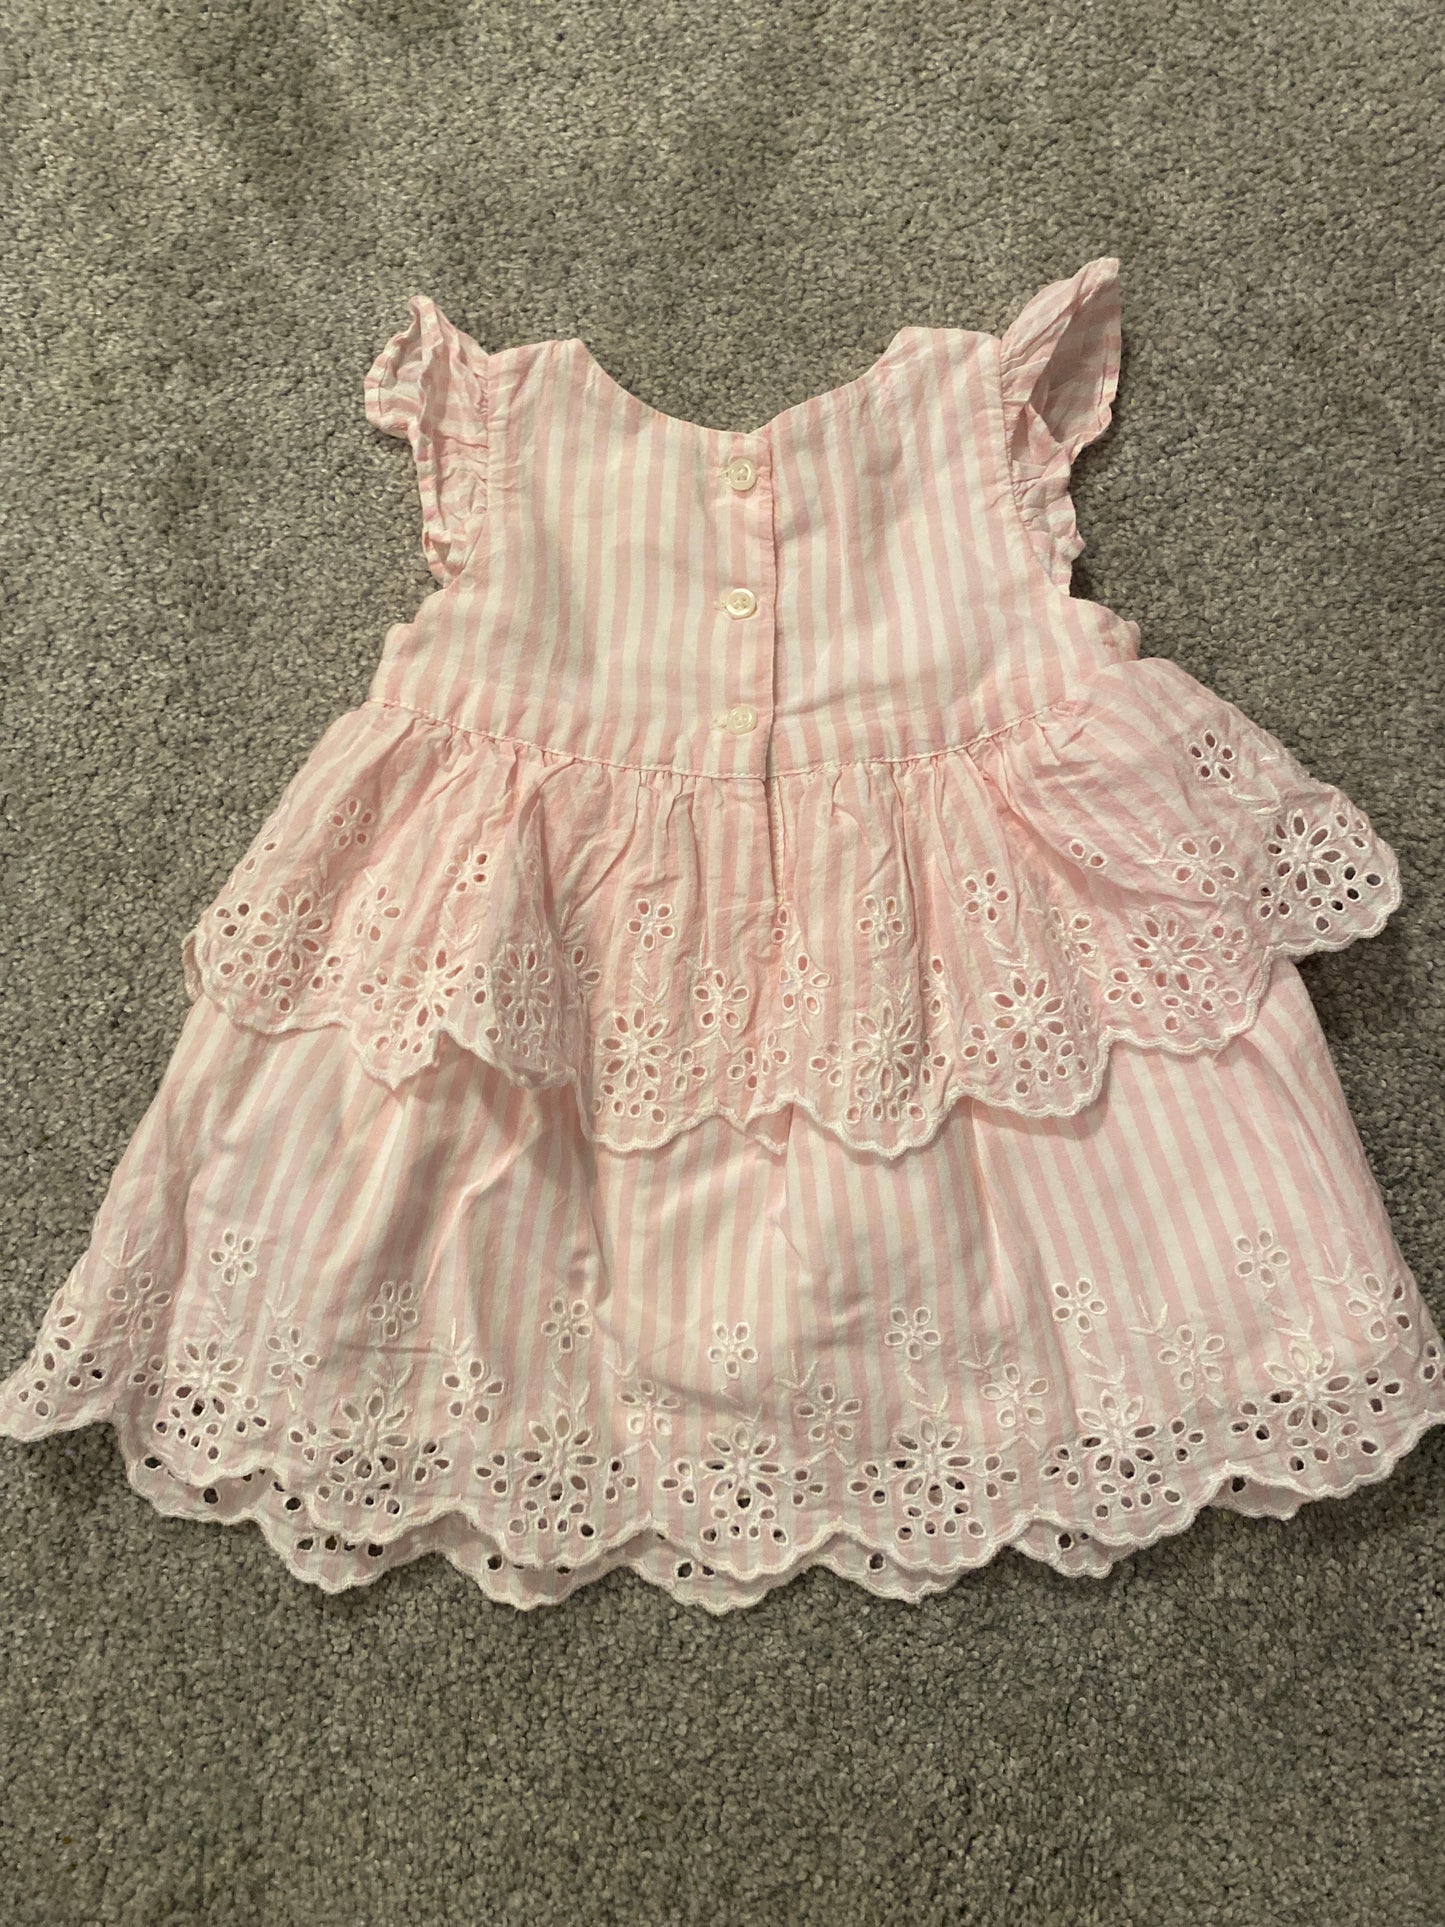 Baby Gap 3-6 Month Seersucker Dress